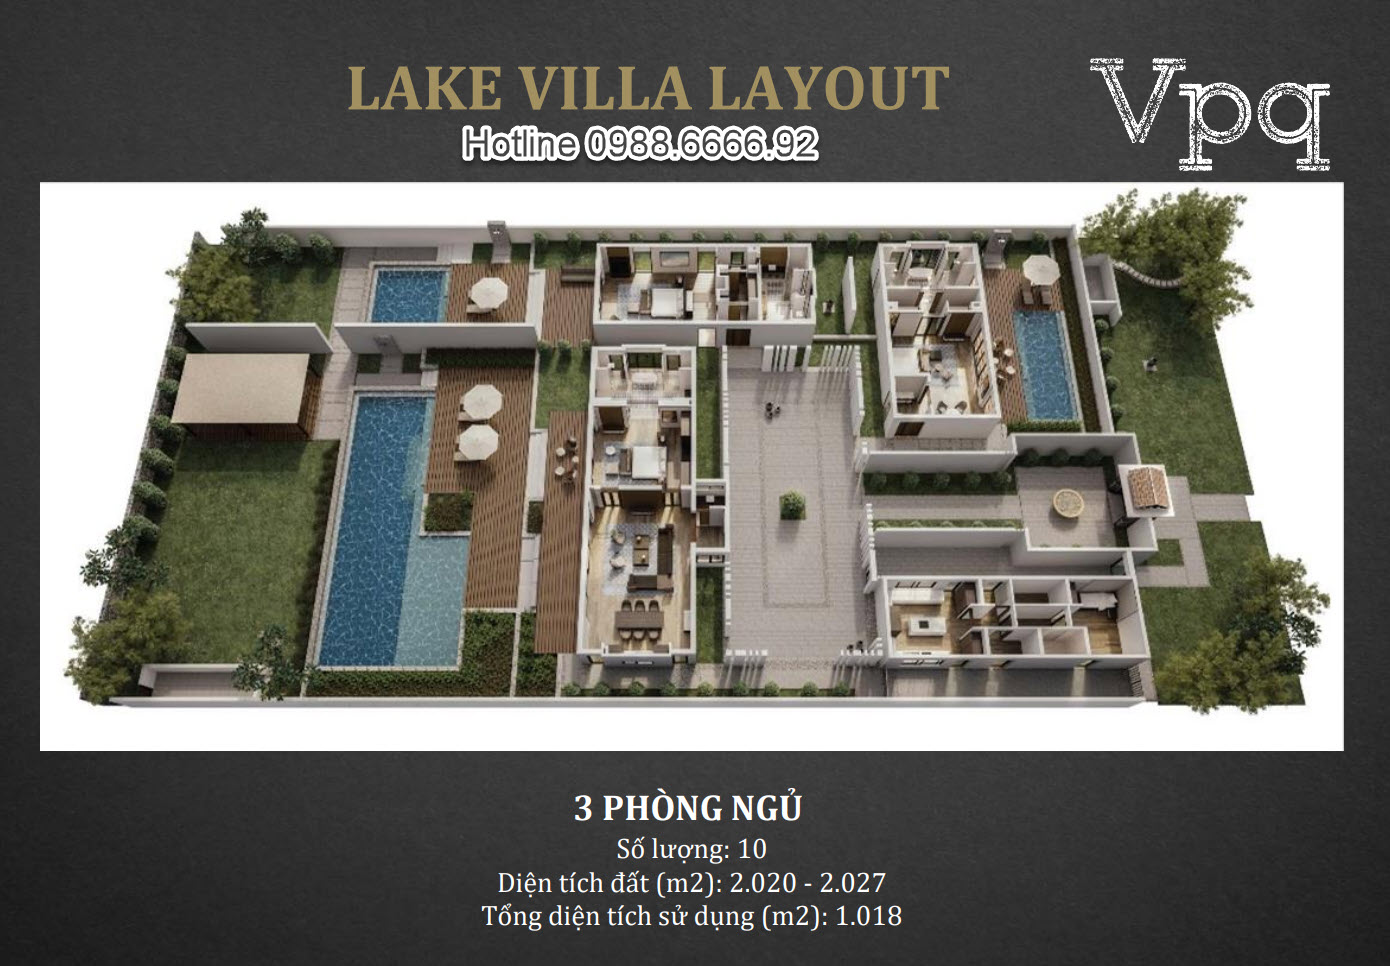 Lake Villa Layout